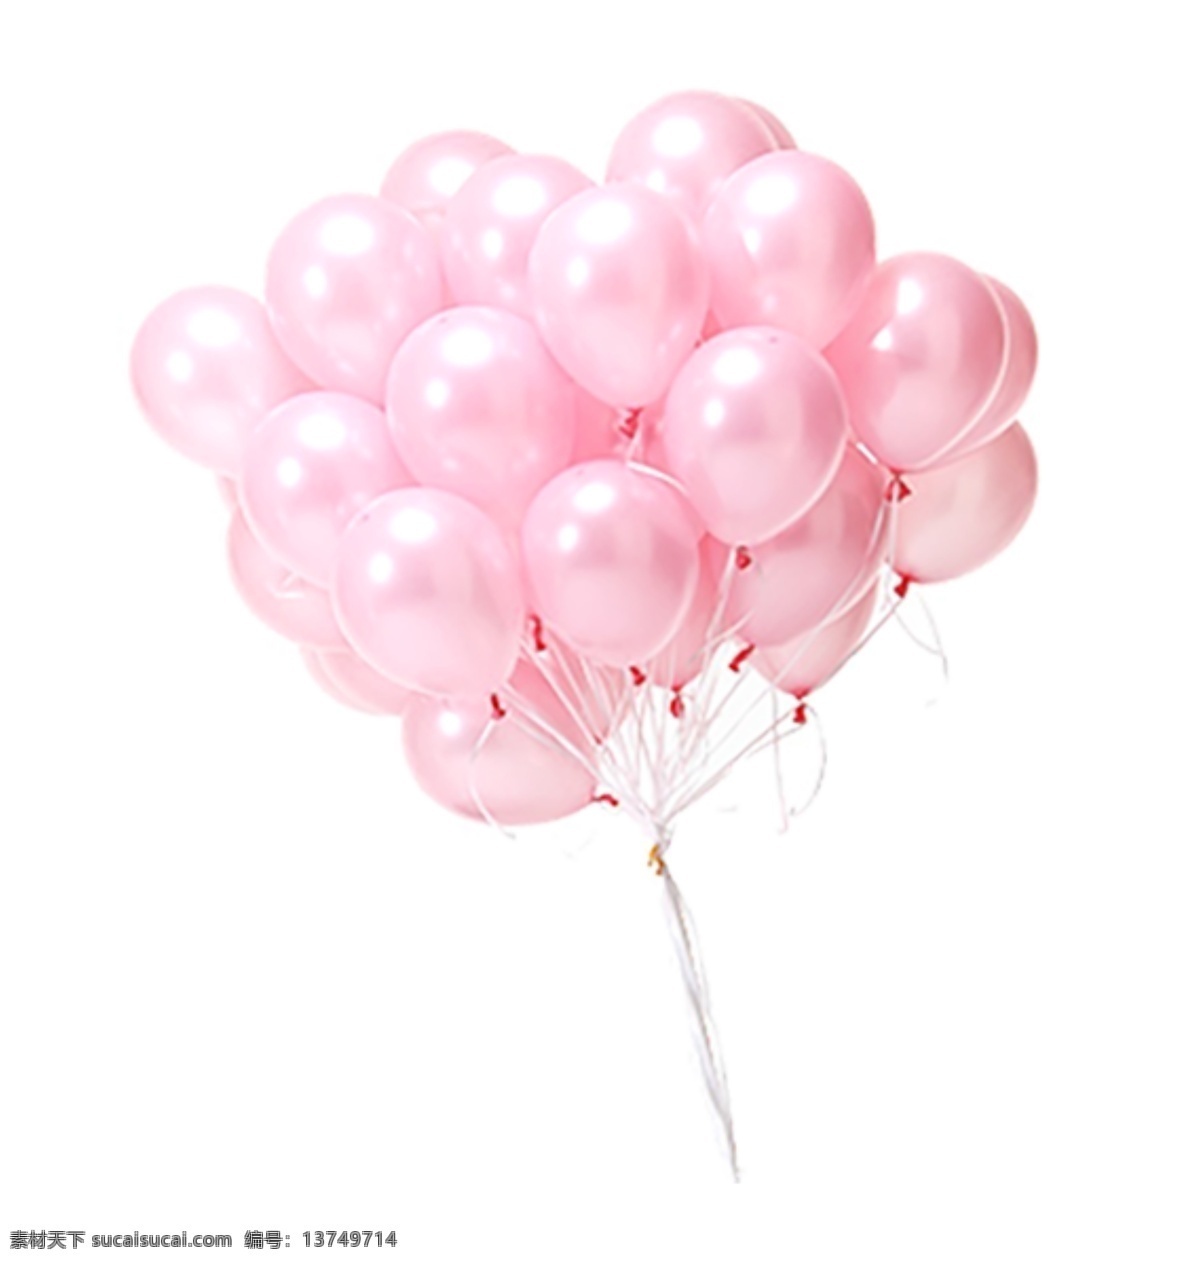 粉色气球图 粉色 气球图 粉色气球 气球串 生活百科 休闲娱乐